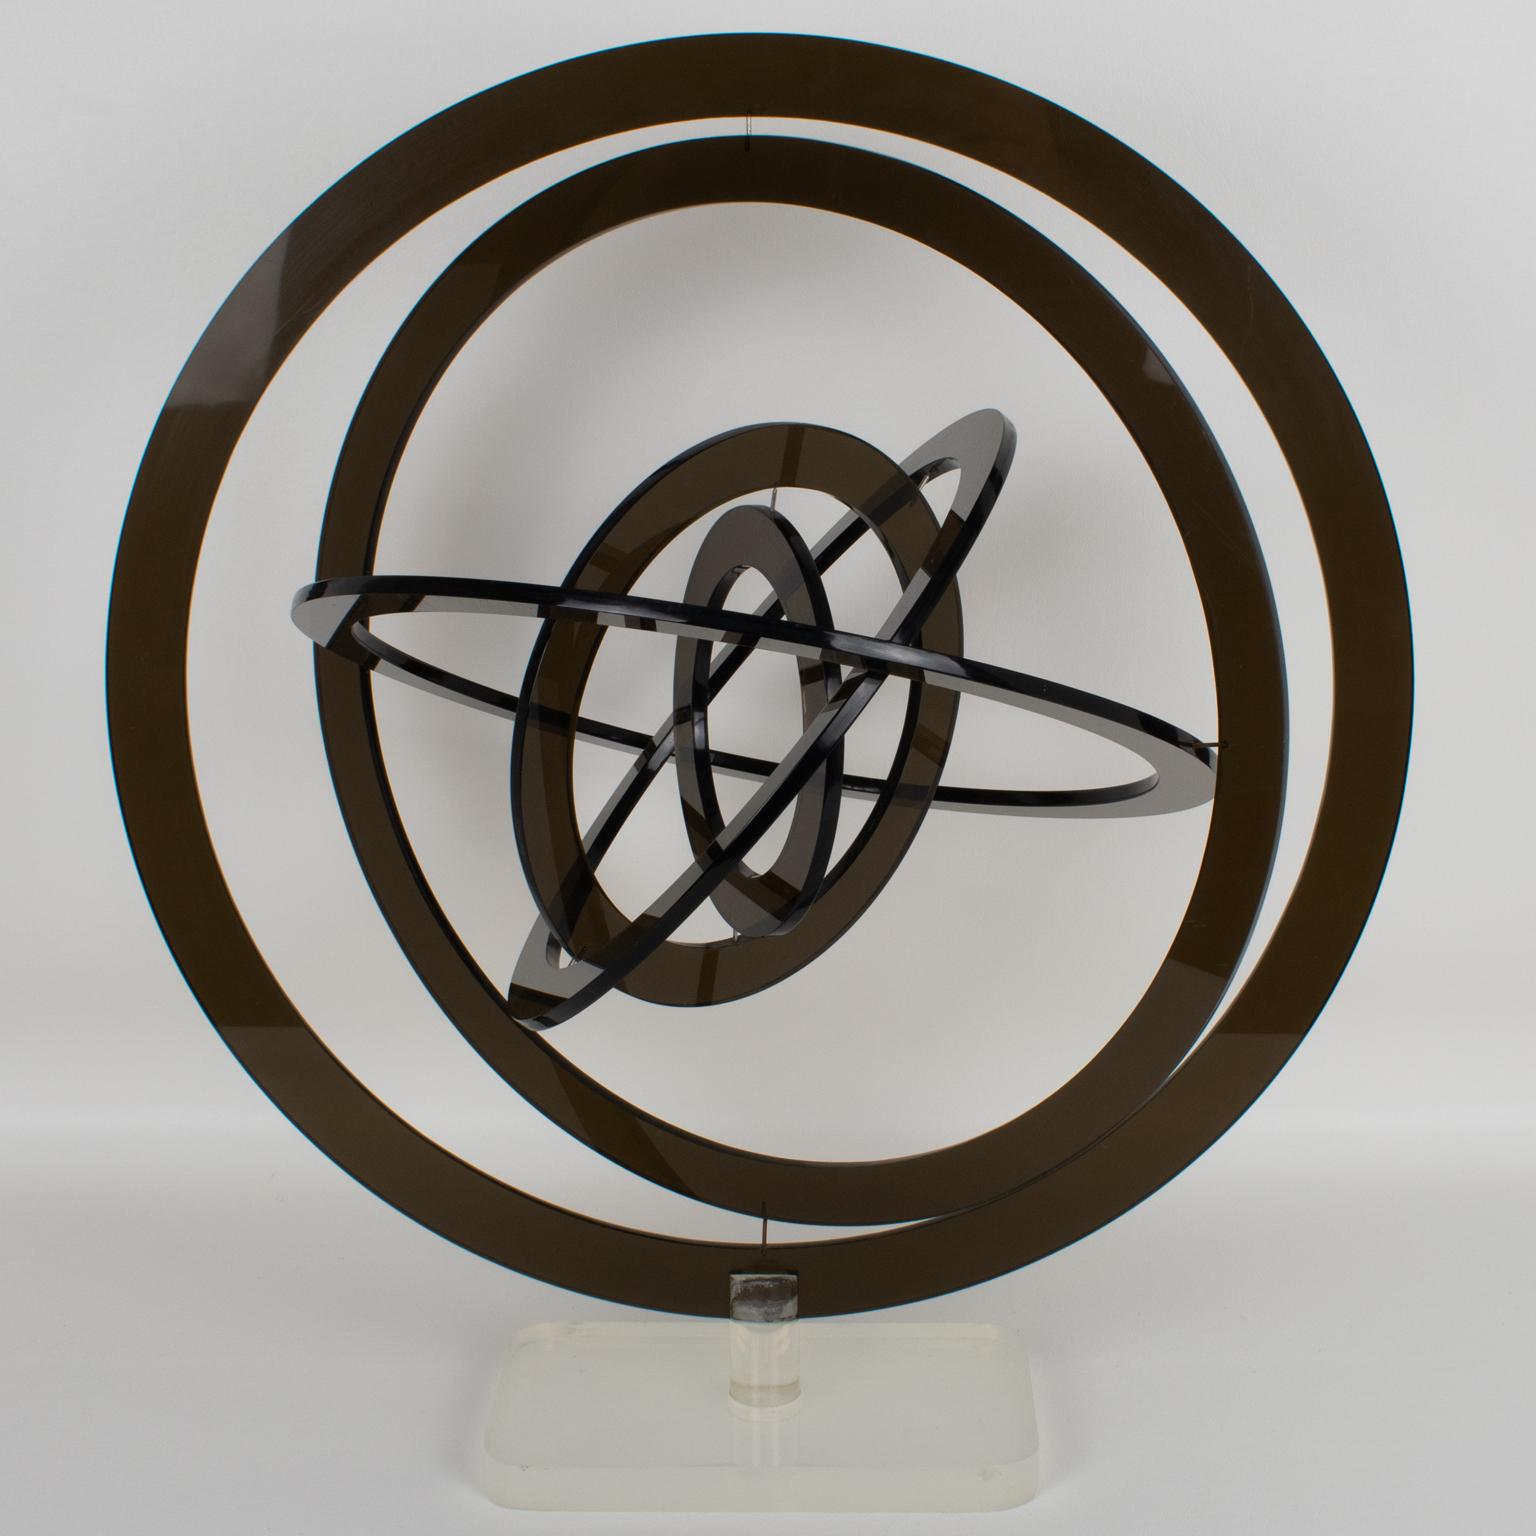 Cette étonnante sculpture cinétique rotative a été fabriquée en Italie dans les années 1970. Les six cercles sont en Lucite de couleur gris fumée et reposent sur une base en Lucite transparent givré. Les six cercles concentriques qui constituent cet